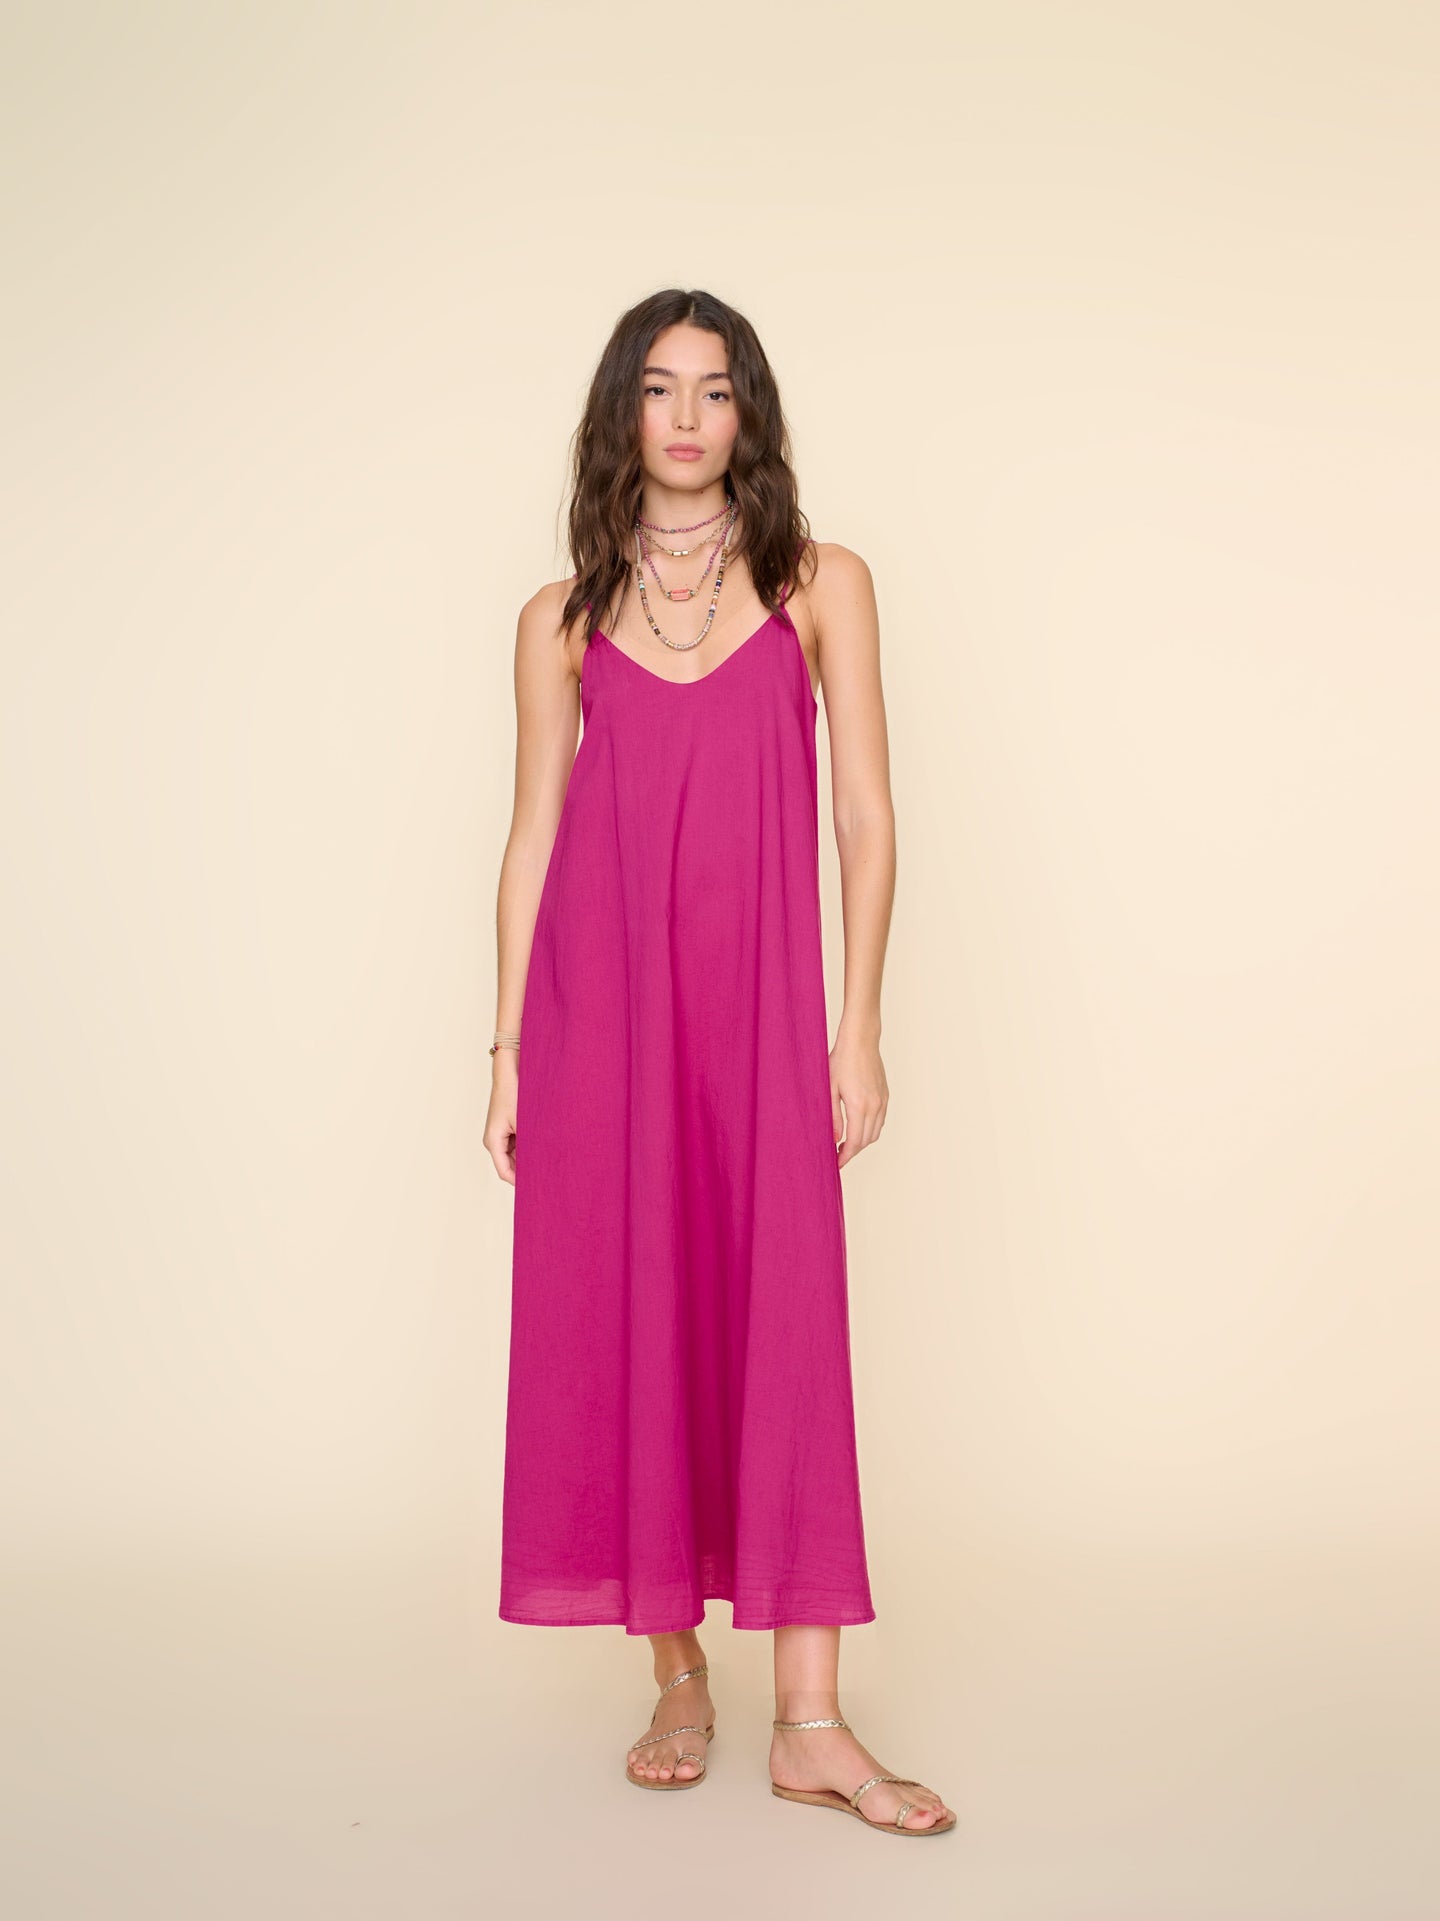 Xirena Dress Pink Plum Teague Dress